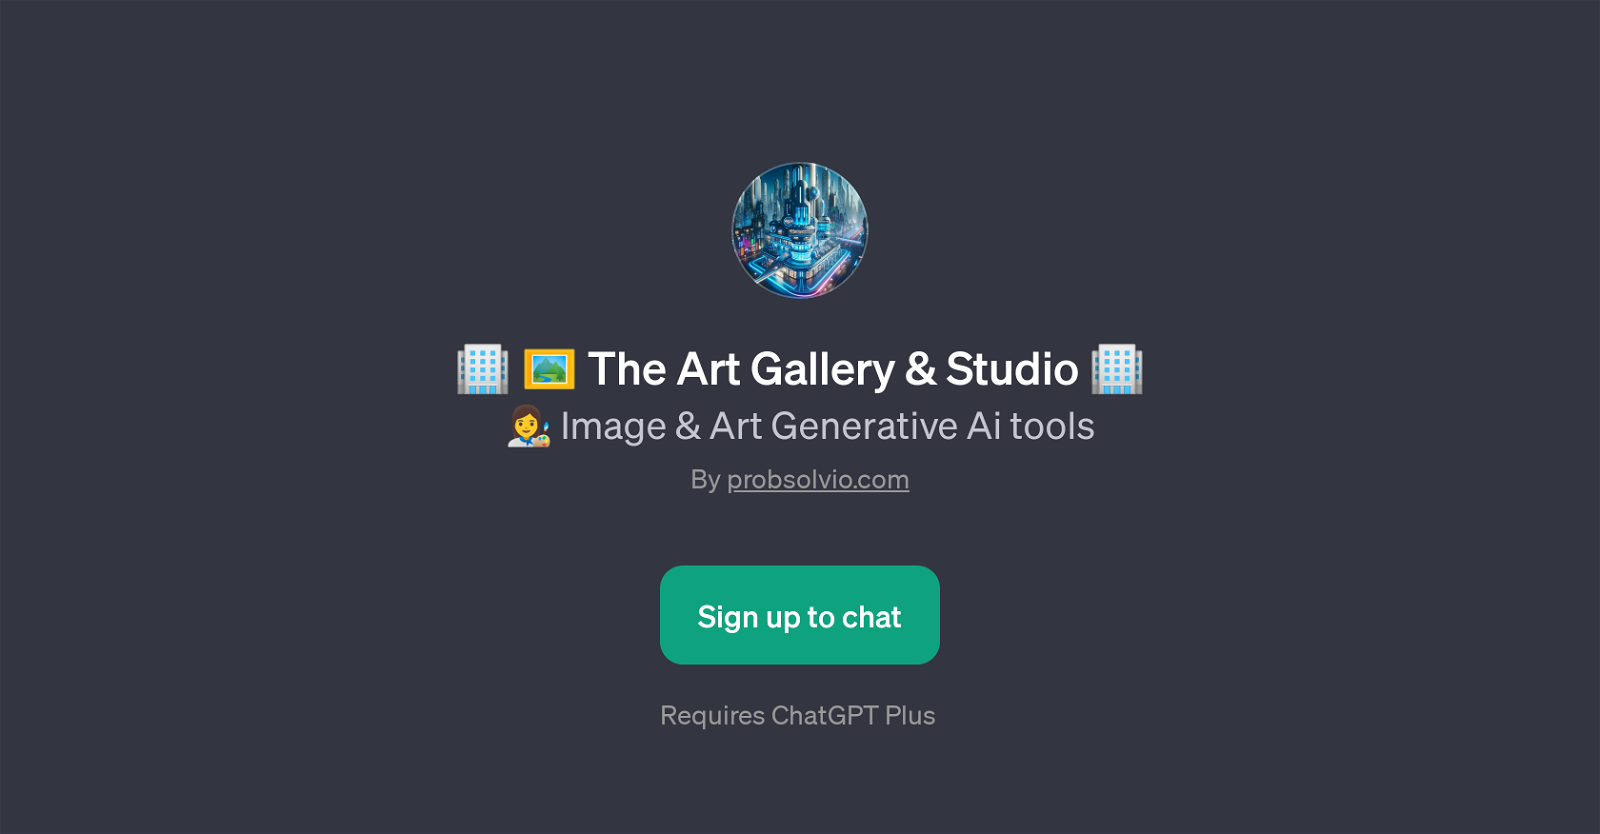 The Art Gallery & Studio website